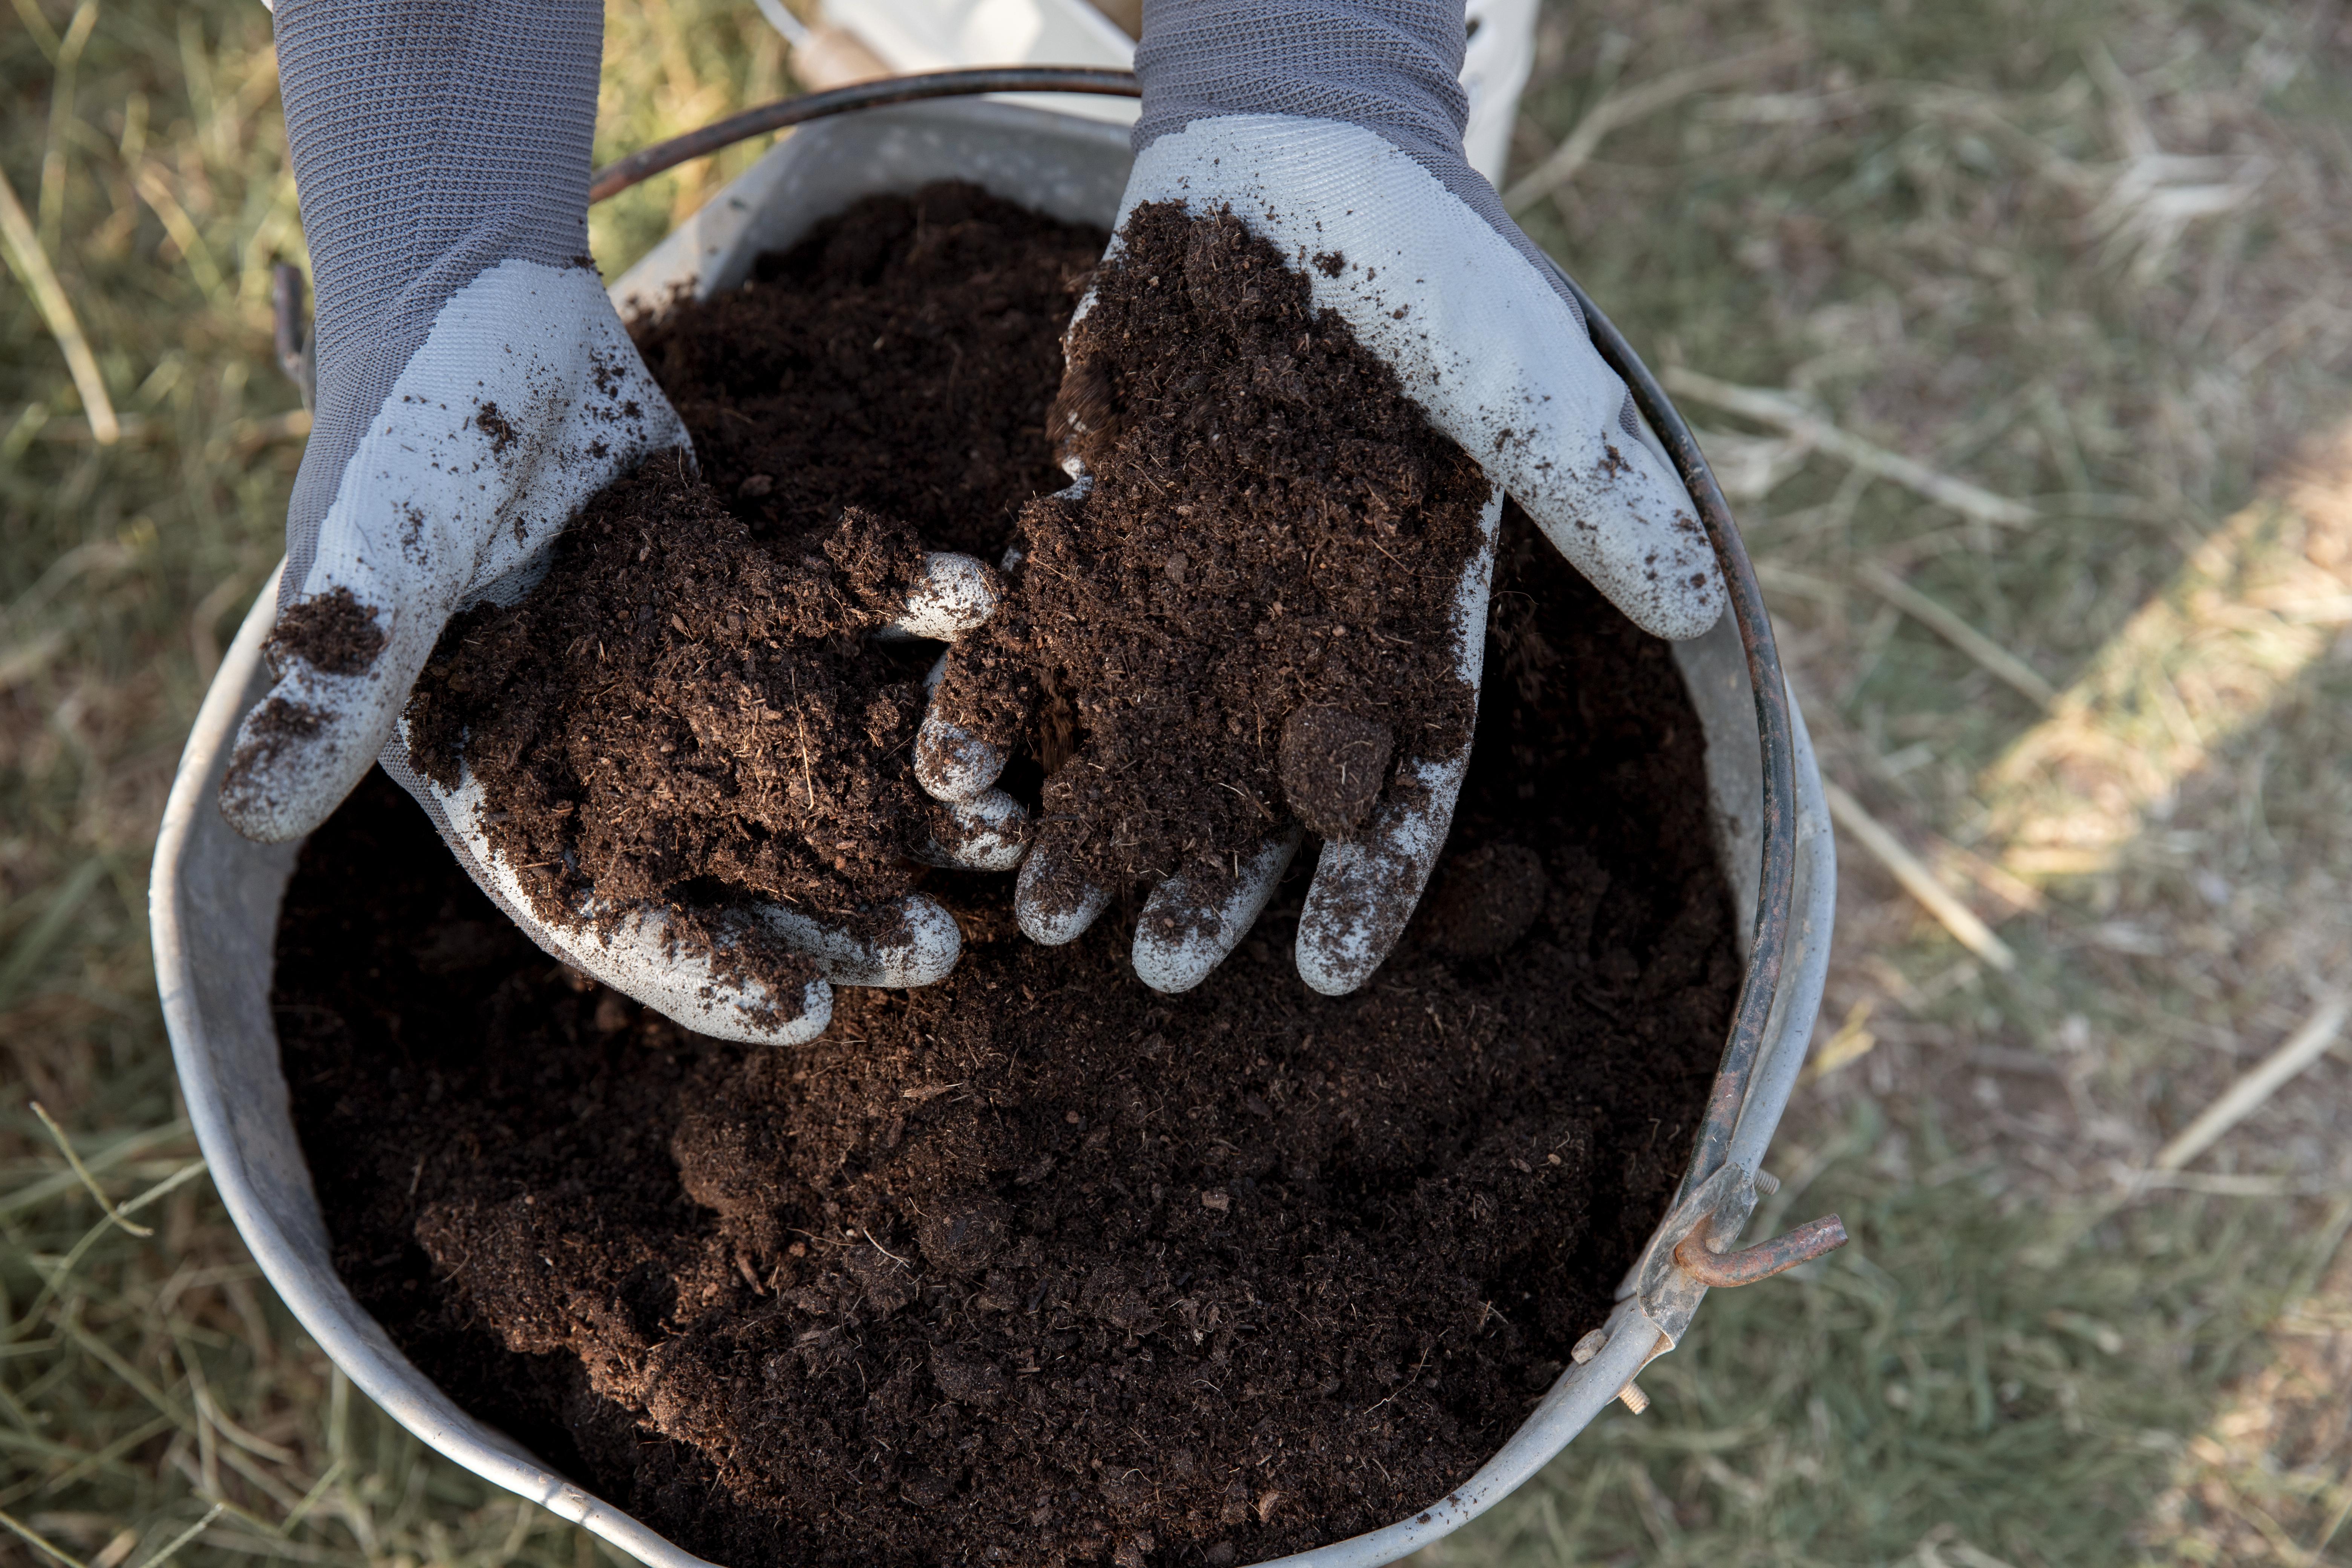 Gardener holding soil in gloved hands, over a bucket of soil.